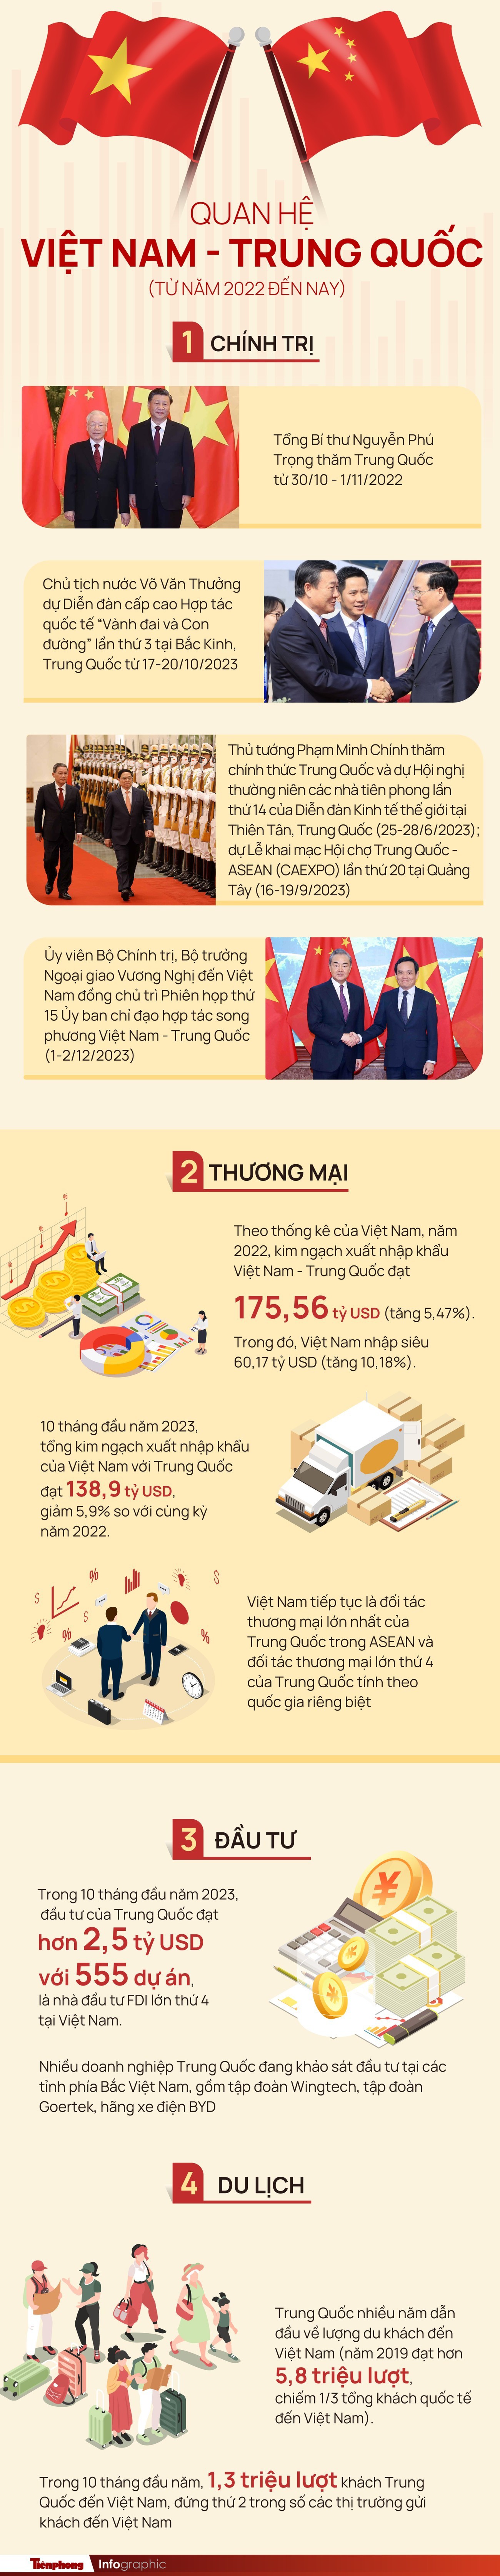 Quan hệ Việt Nam - Trung Quốc phát triển ngày càng thực chất, vững chắc - 1